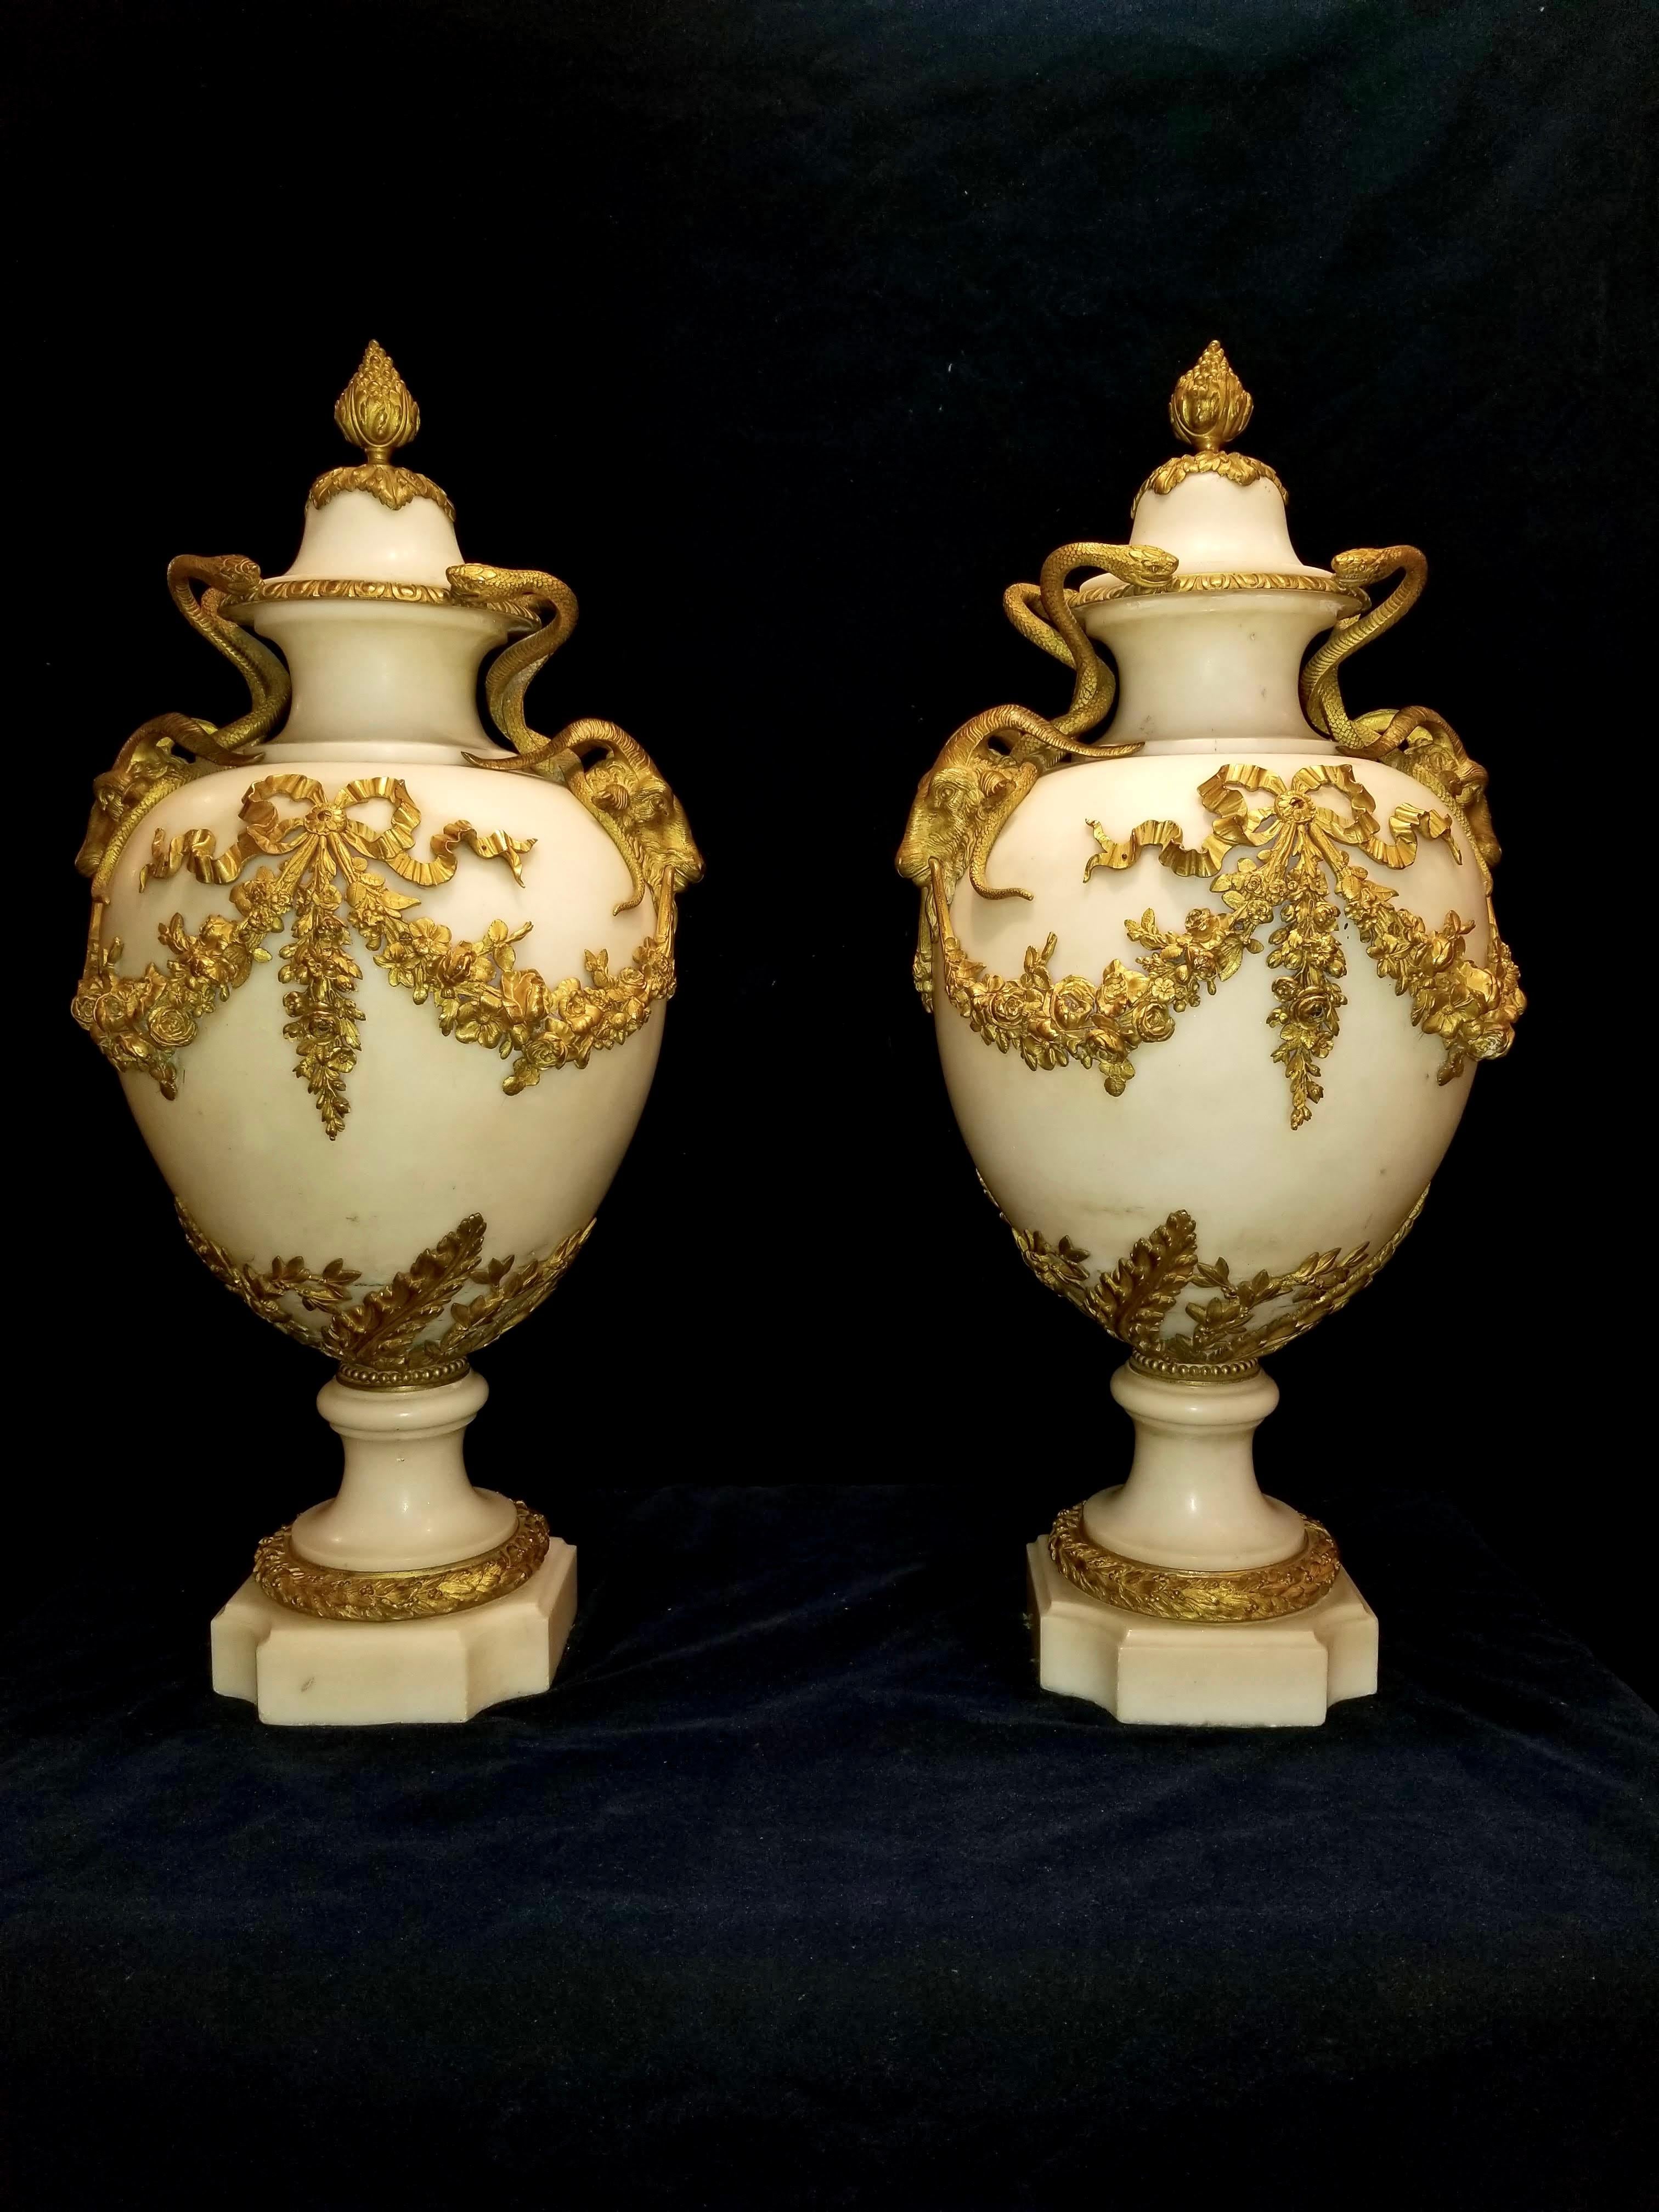 Ein sehr feines und monumentales Paar antiker französischer Louis XVI-Vasen aus Doré-Bronze und weißem Carrara-Marmor mit Widderköpfen und Serpentinhenkeln, die Henry Dasson zugeschrieben werden. Diese prächtigen Vasen werden aus makellosem